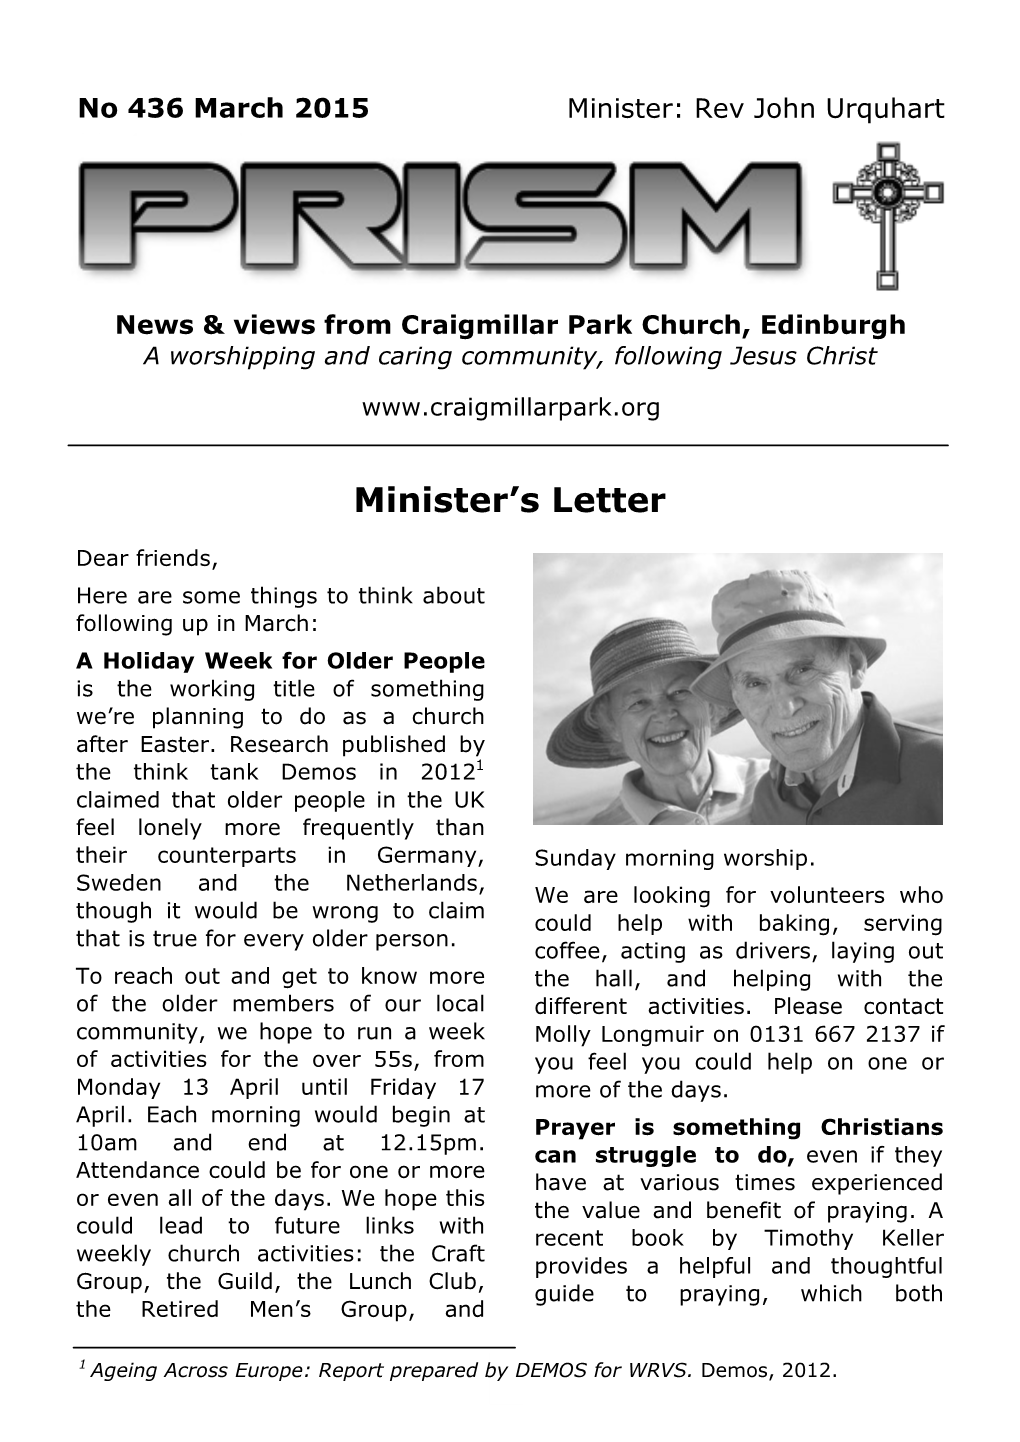 Minister's Letter